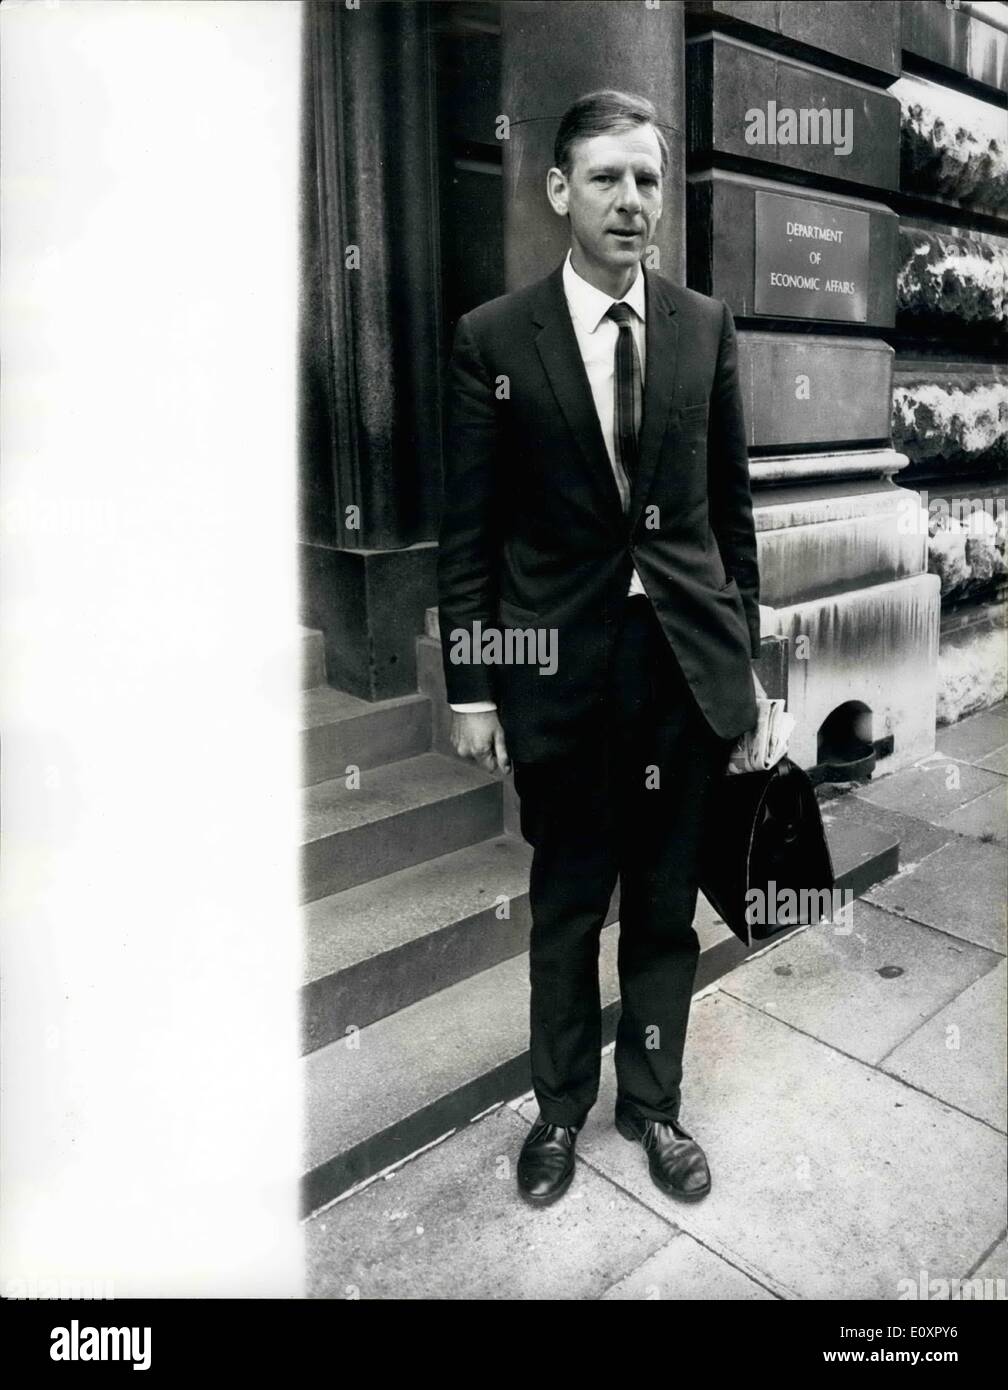 8. August 1967 - neue Wirtschaftsminister; Foto zeigt Herr Peter Shore, der neue Minister für wirtschaftliche Angelegenheiten, abgebildet, so dass die Stockfoto